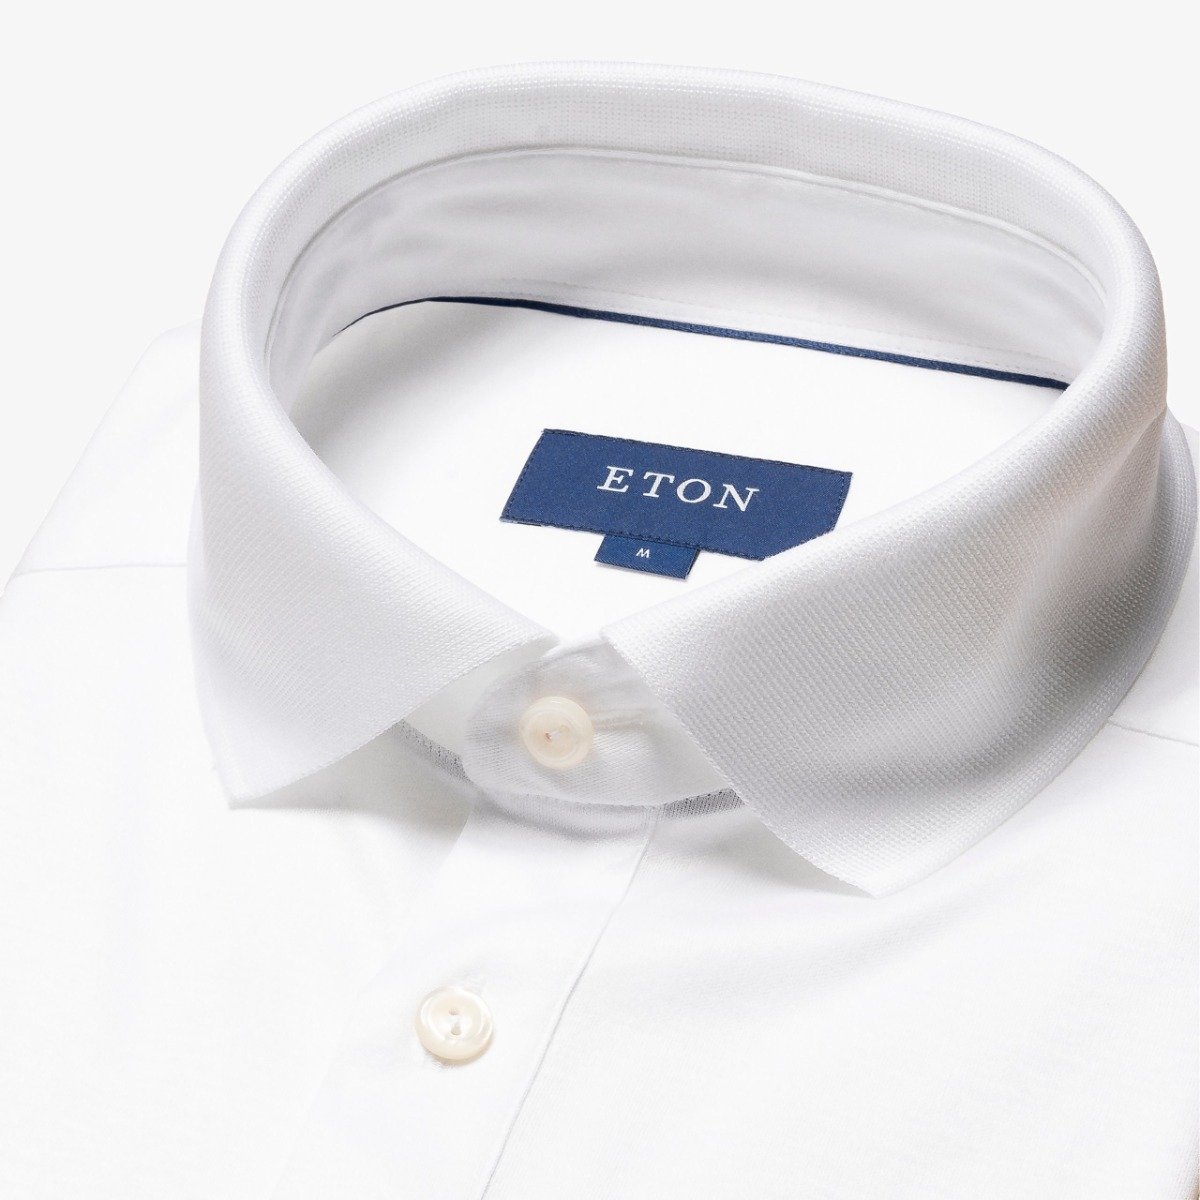 Eton white slim fit Filo di Scozia solid collar men's polo shirt